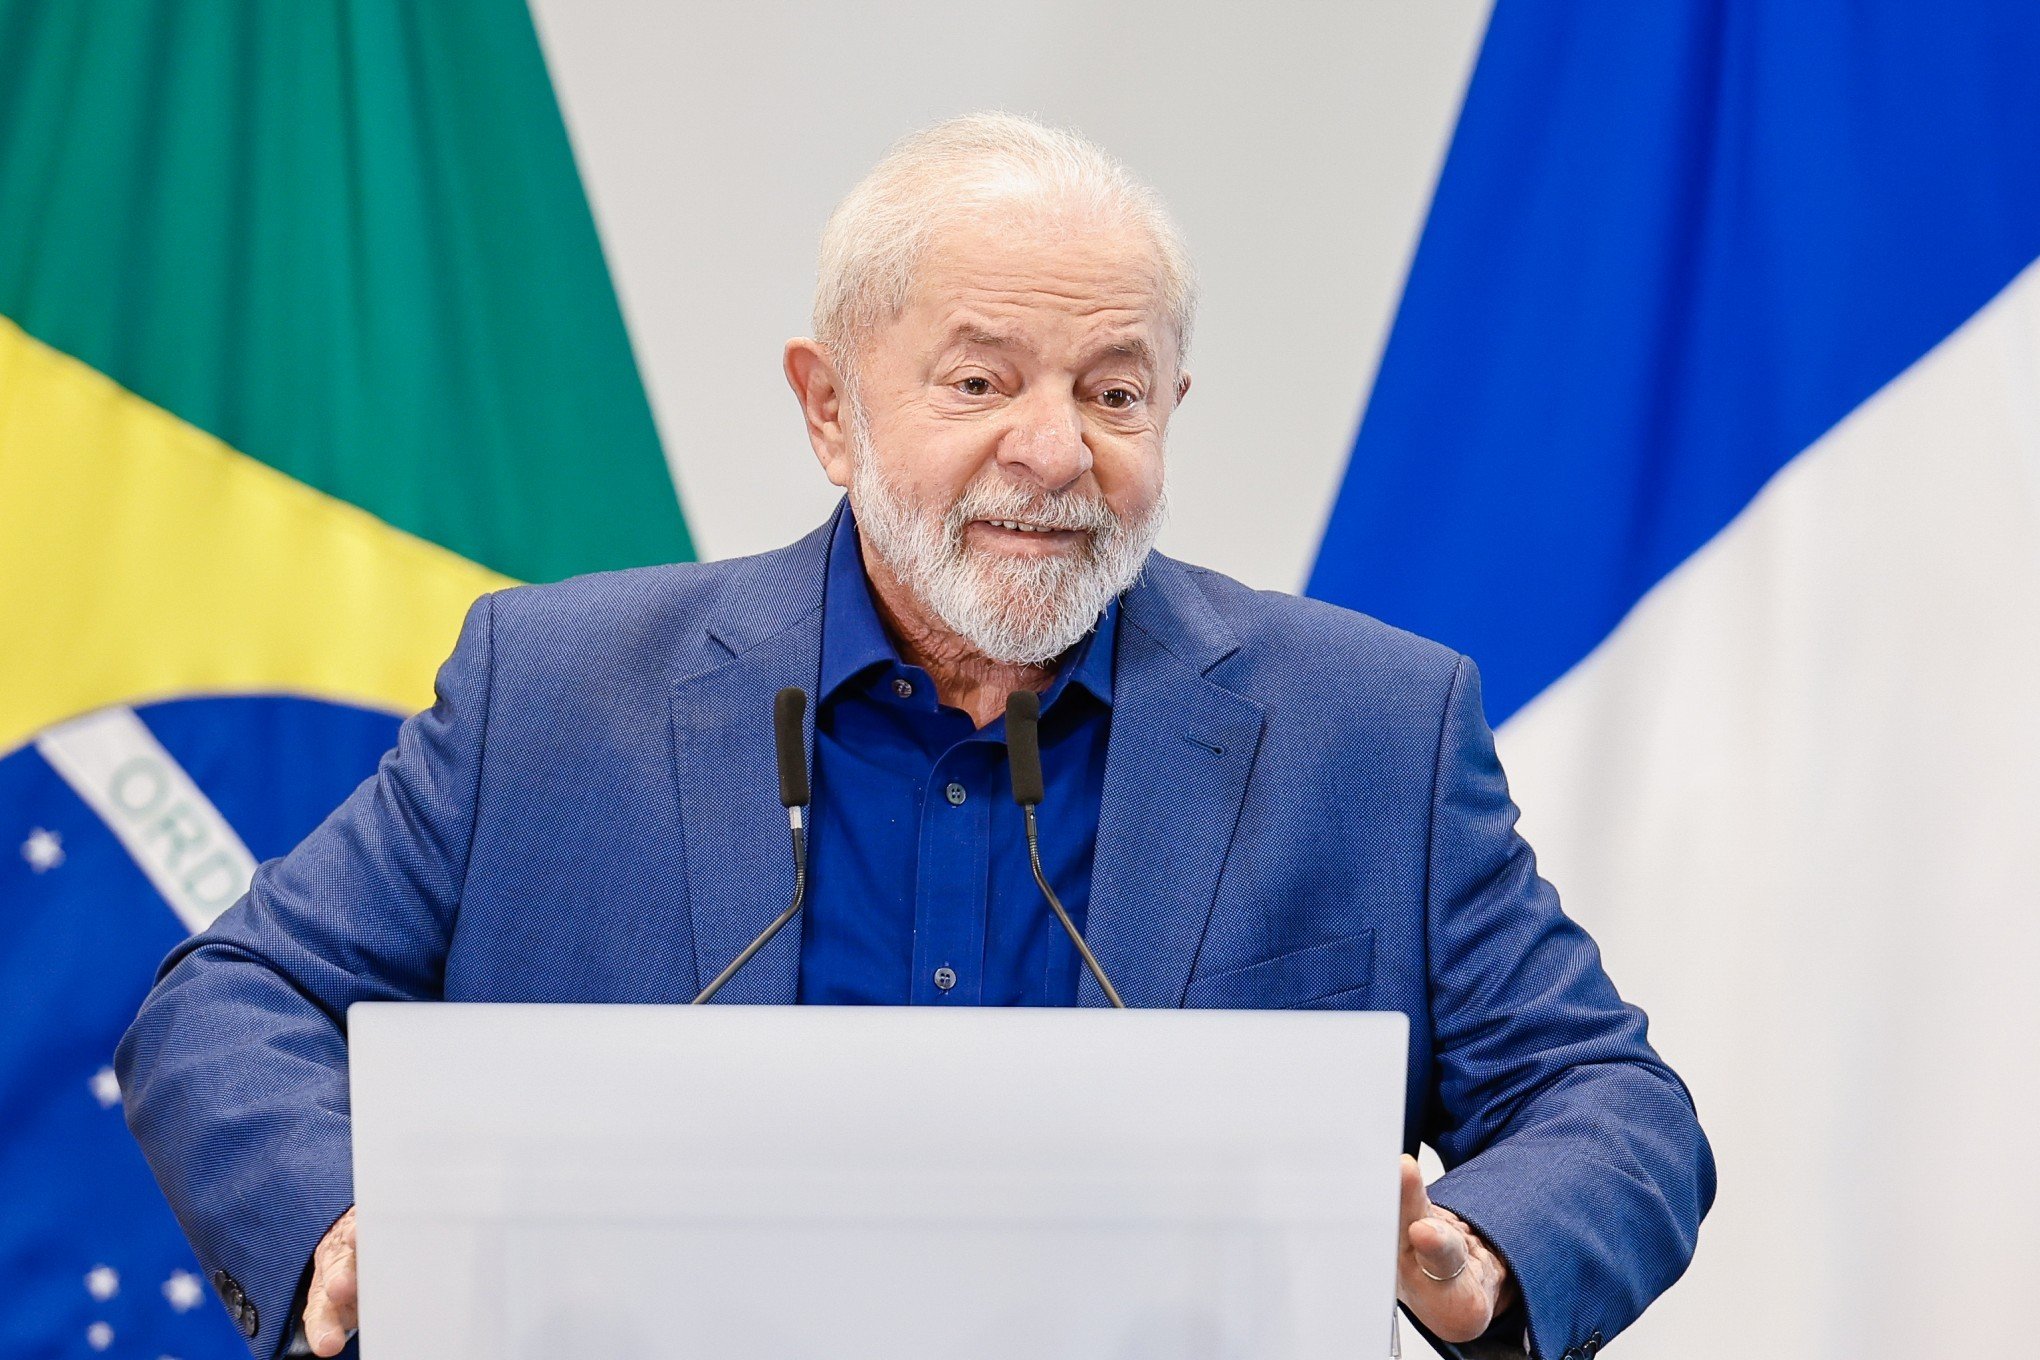 ASSISTA: Veja o anúncio de Lula sobre o novo PAC com investimento de R$ 75,6 bilhões no RS